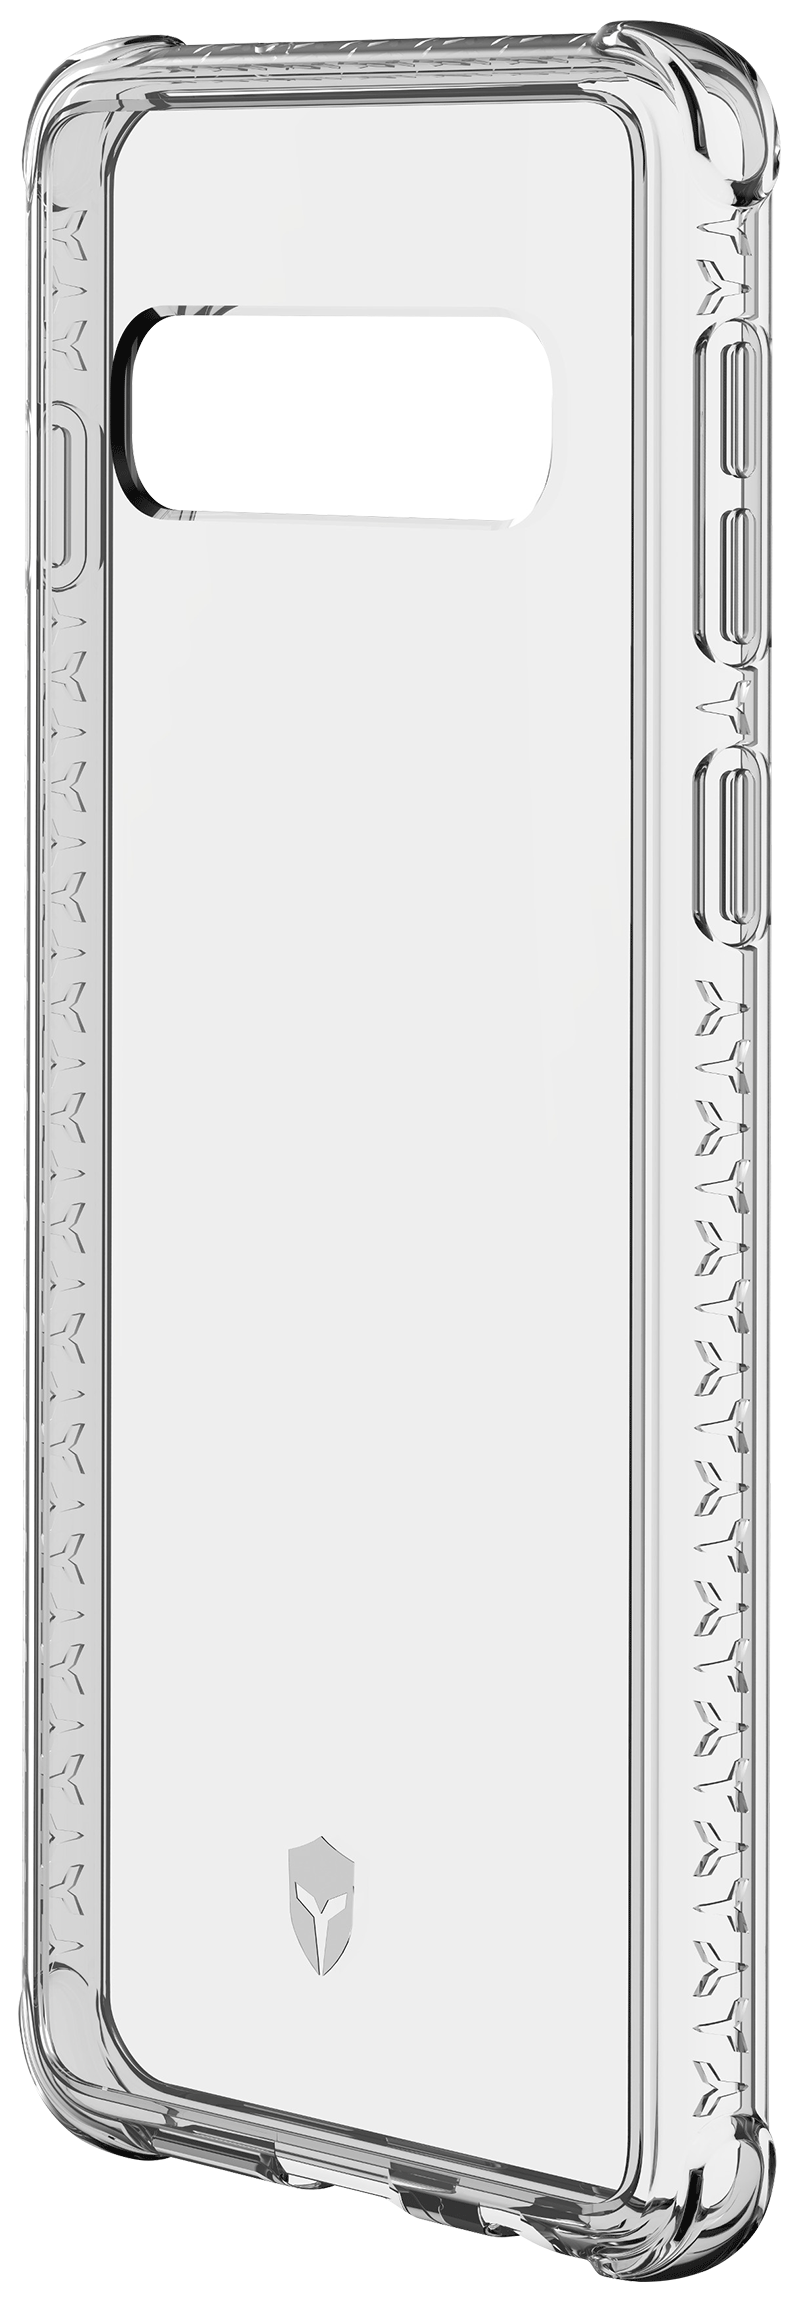 Coque Force Case Air Galaxy S10 transparente